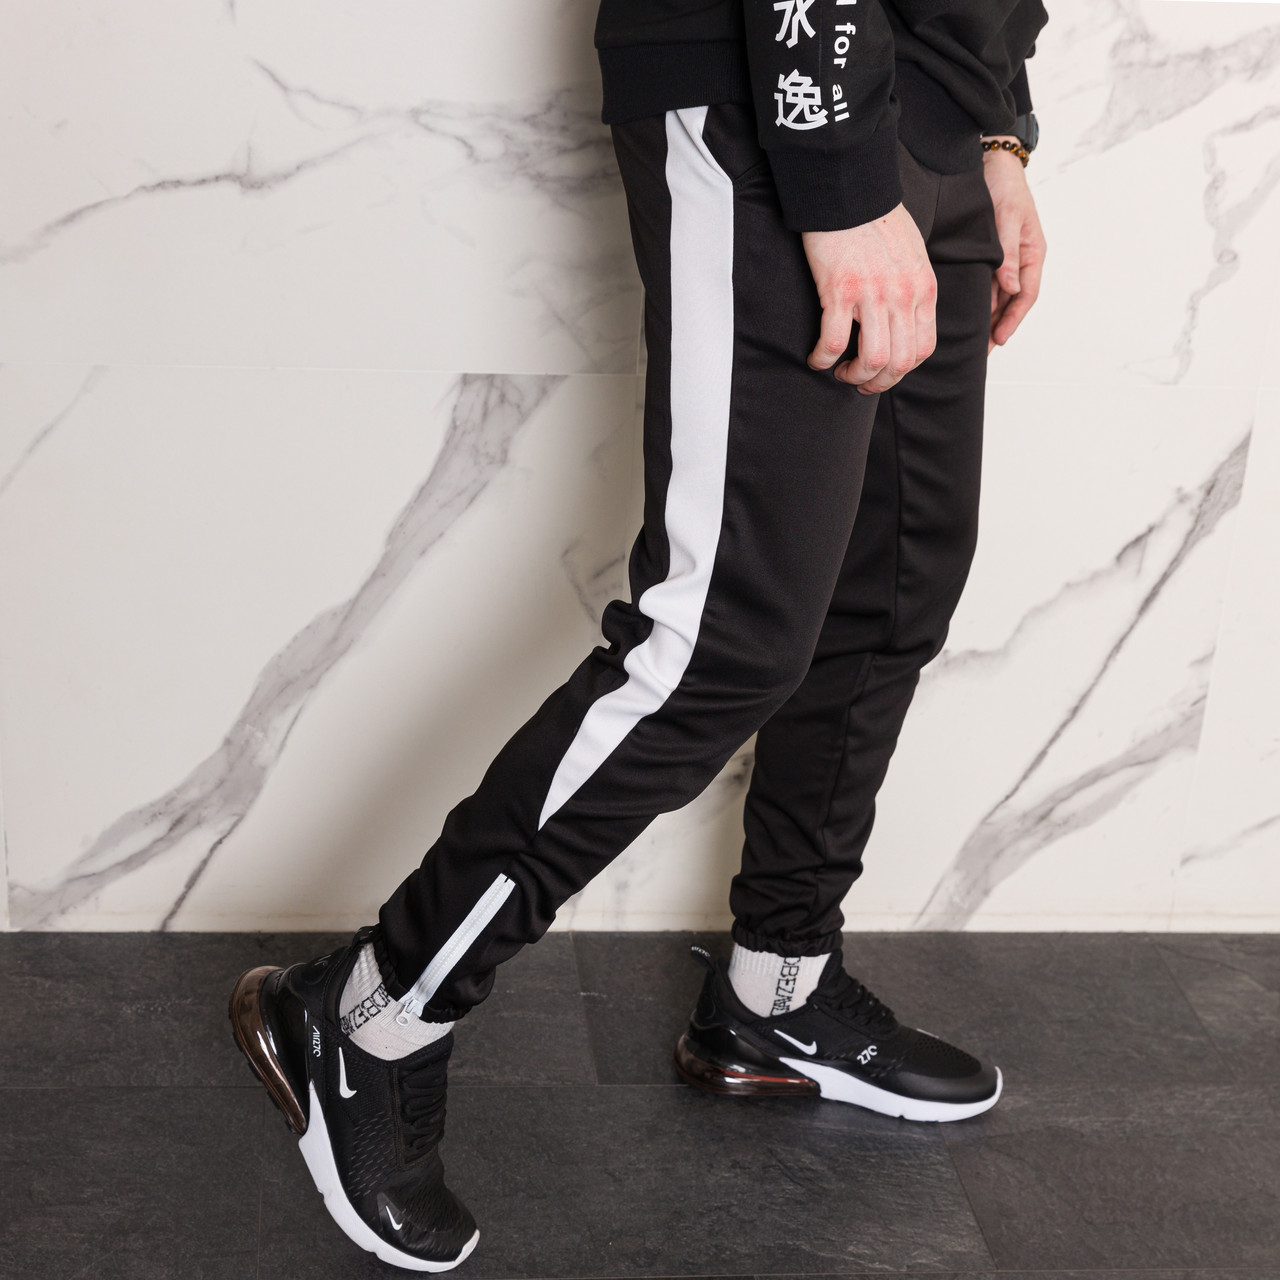 Спортивні чорні штани з білим лампасом чоловічі бренд ТУР модель Роккі (Rocky) TURWEAR - Фото 5